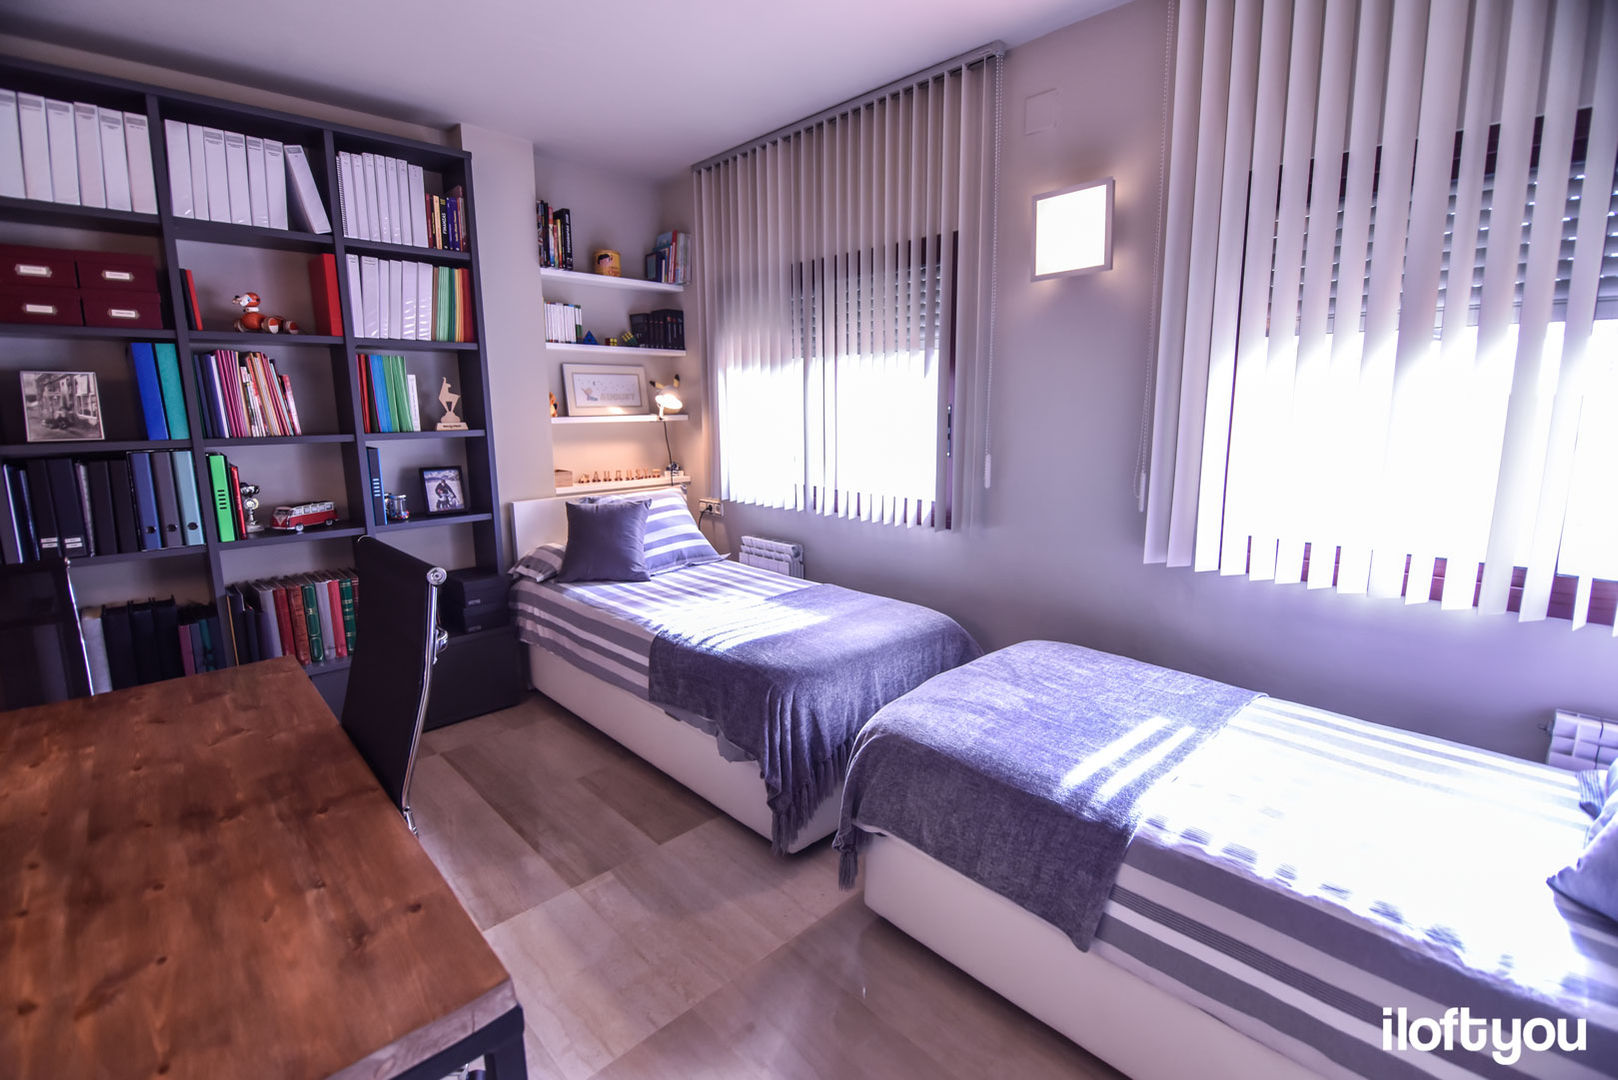 Dormitorio juvenil en Badalona iloftyou Dormitorios modernos: Ideas, imágenes y decoración